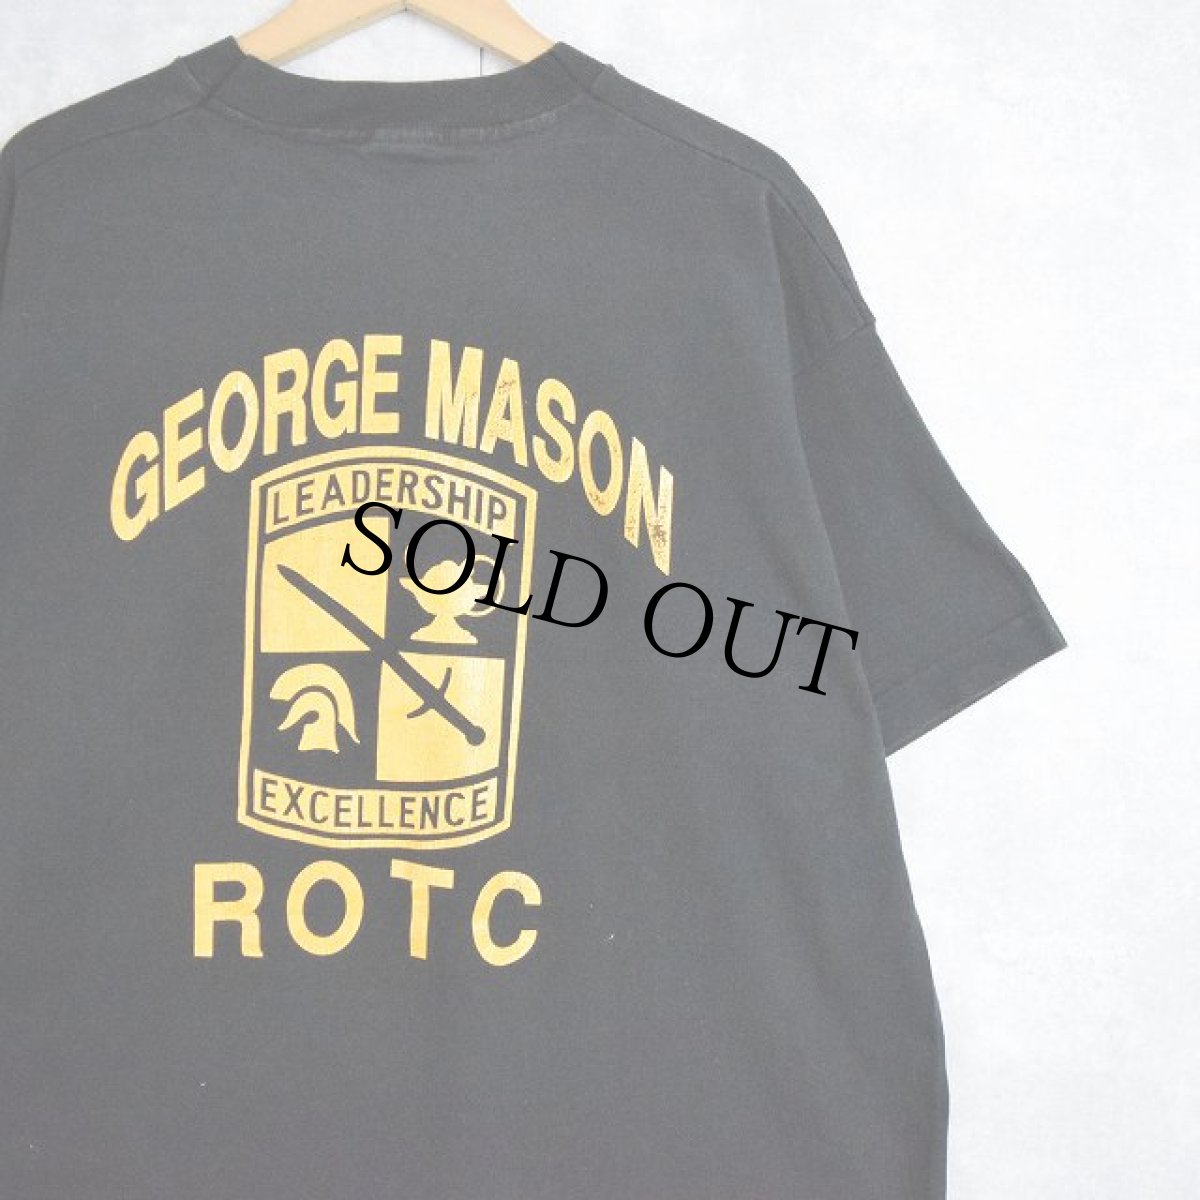 画像1: 90’s USA製 "GEORGE MASON ROTC" プリントTシャツ BLACK XL (1)